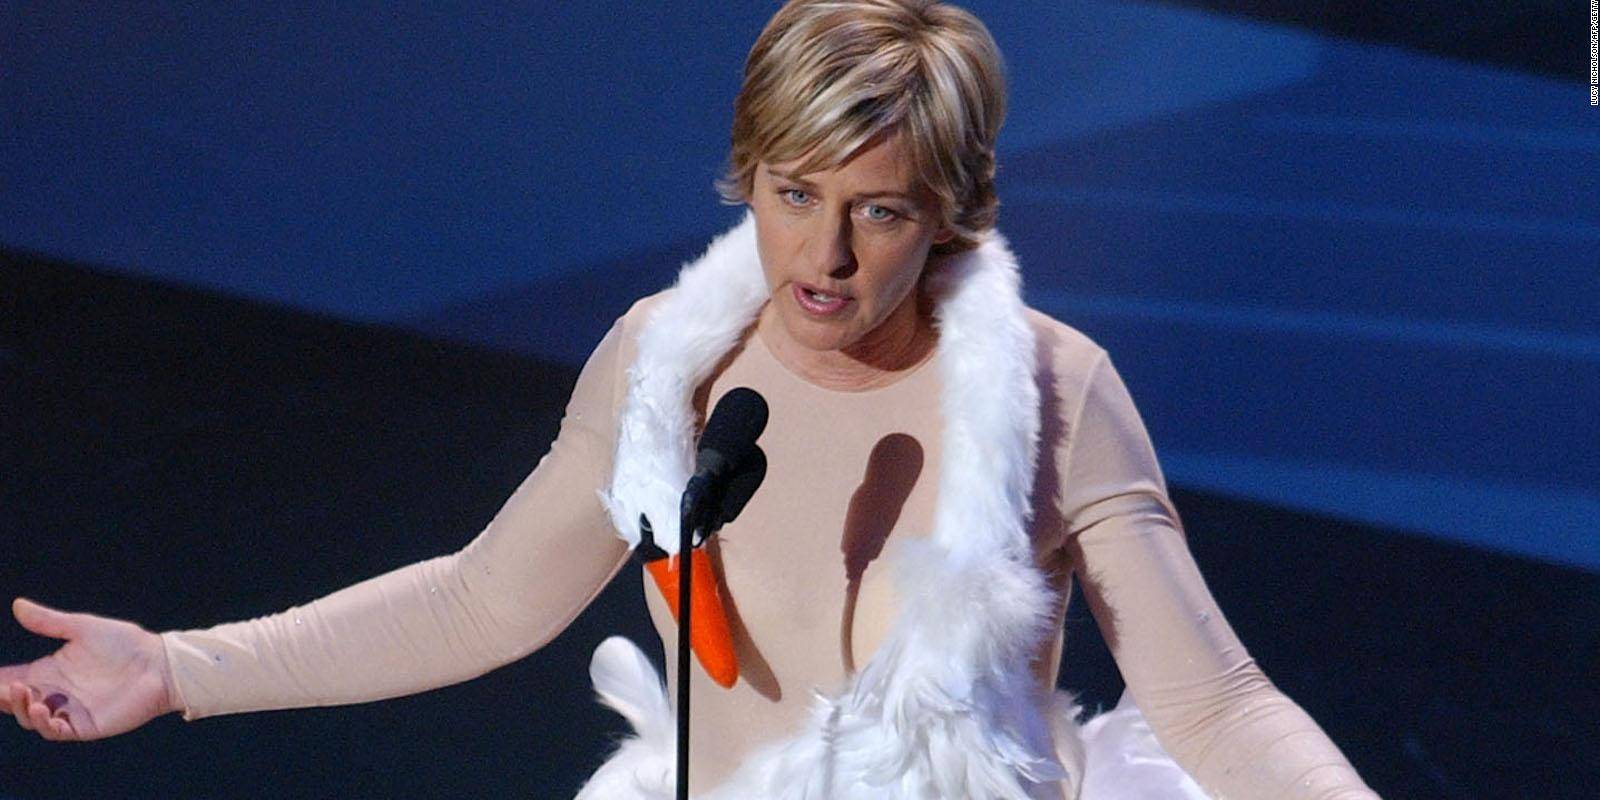 Ellen rockt ein Schwanenkleid bei der Ausrichtung der 53. jährlichen Primetime Emmy Awards (2001)